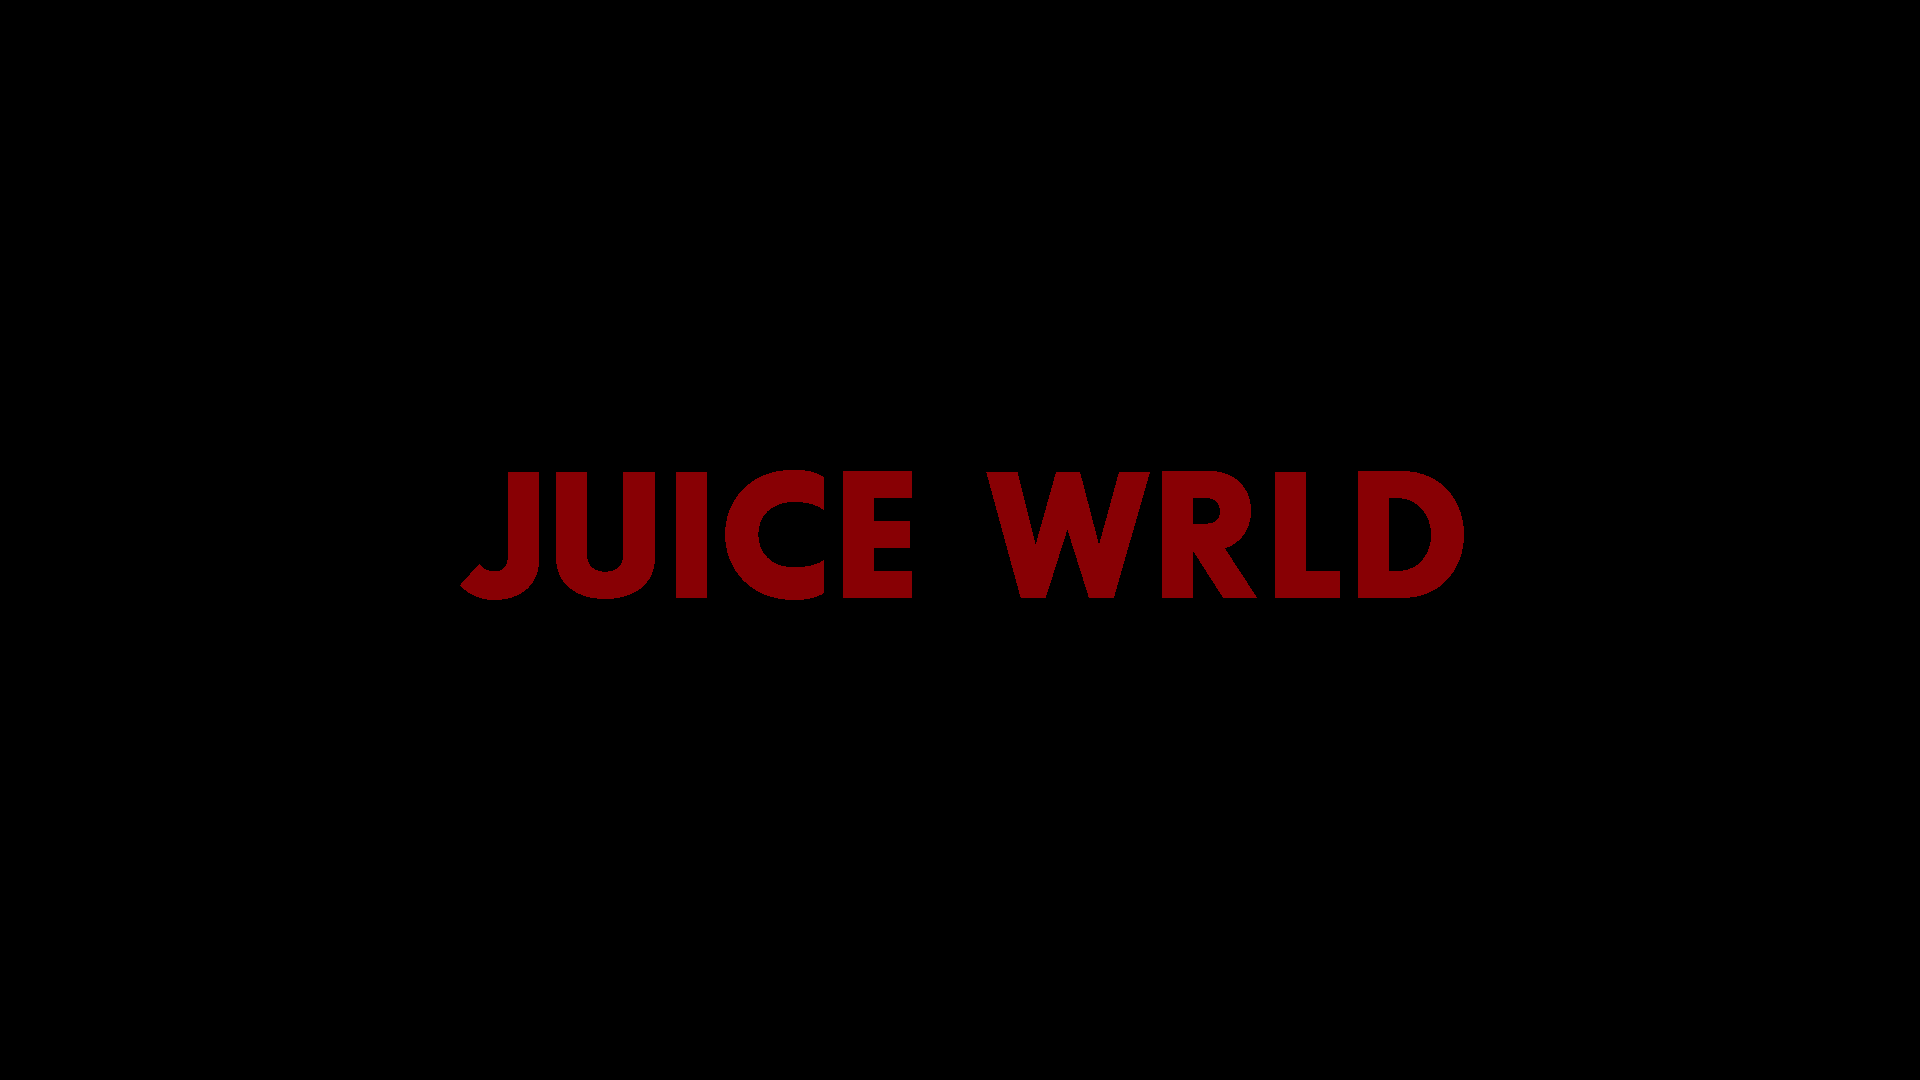 Juice WRLD - Legends Never Die (Deluxe) Wallpaper by me @luisitxo - juice  wrld post - Imgur